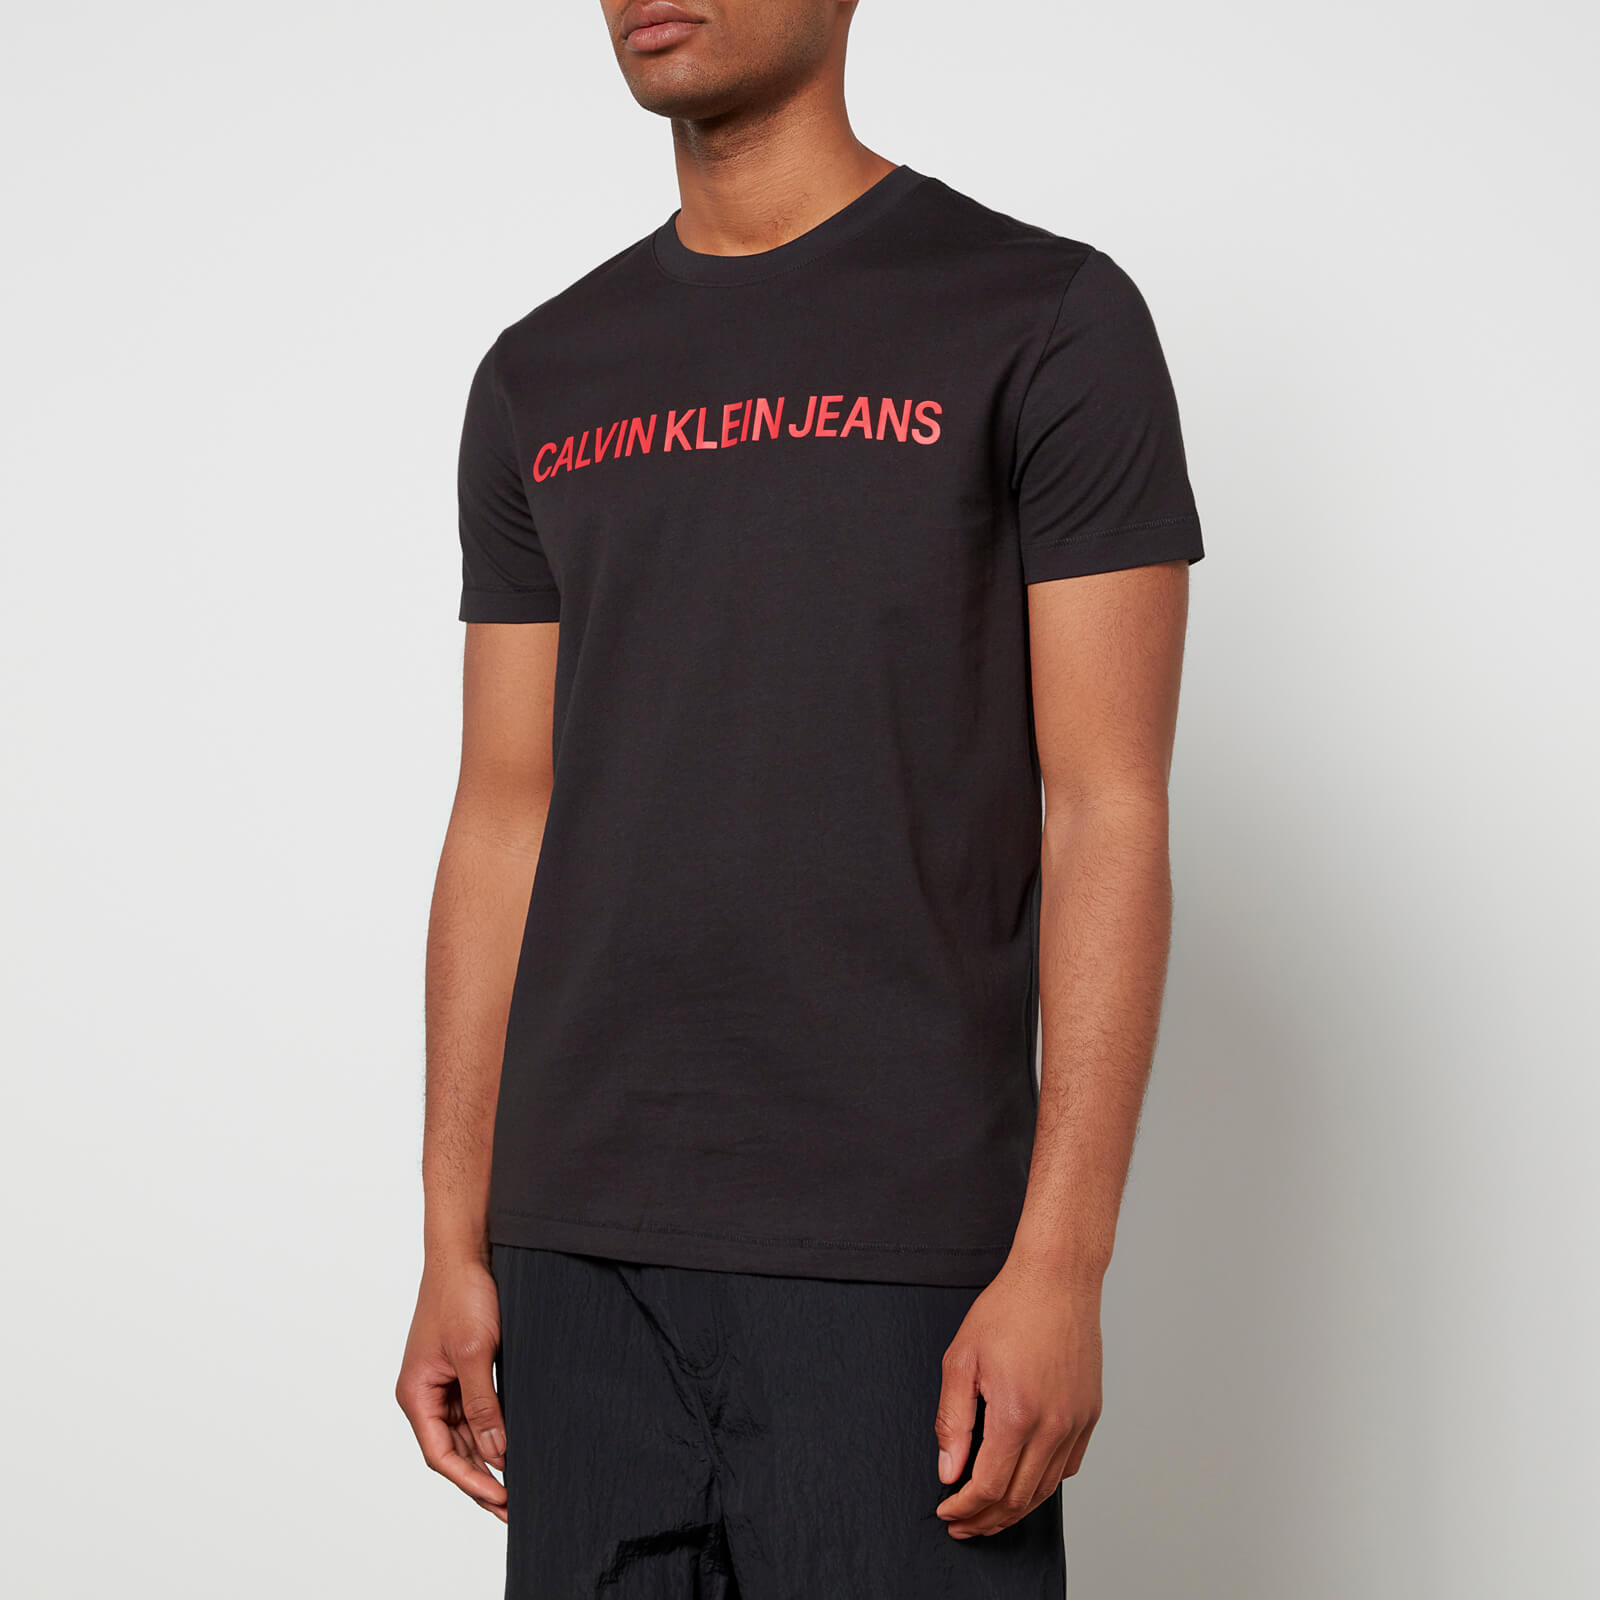 Calvin Klein Jeans Men's Institutional Logo Slim T-Shirt - Black - S